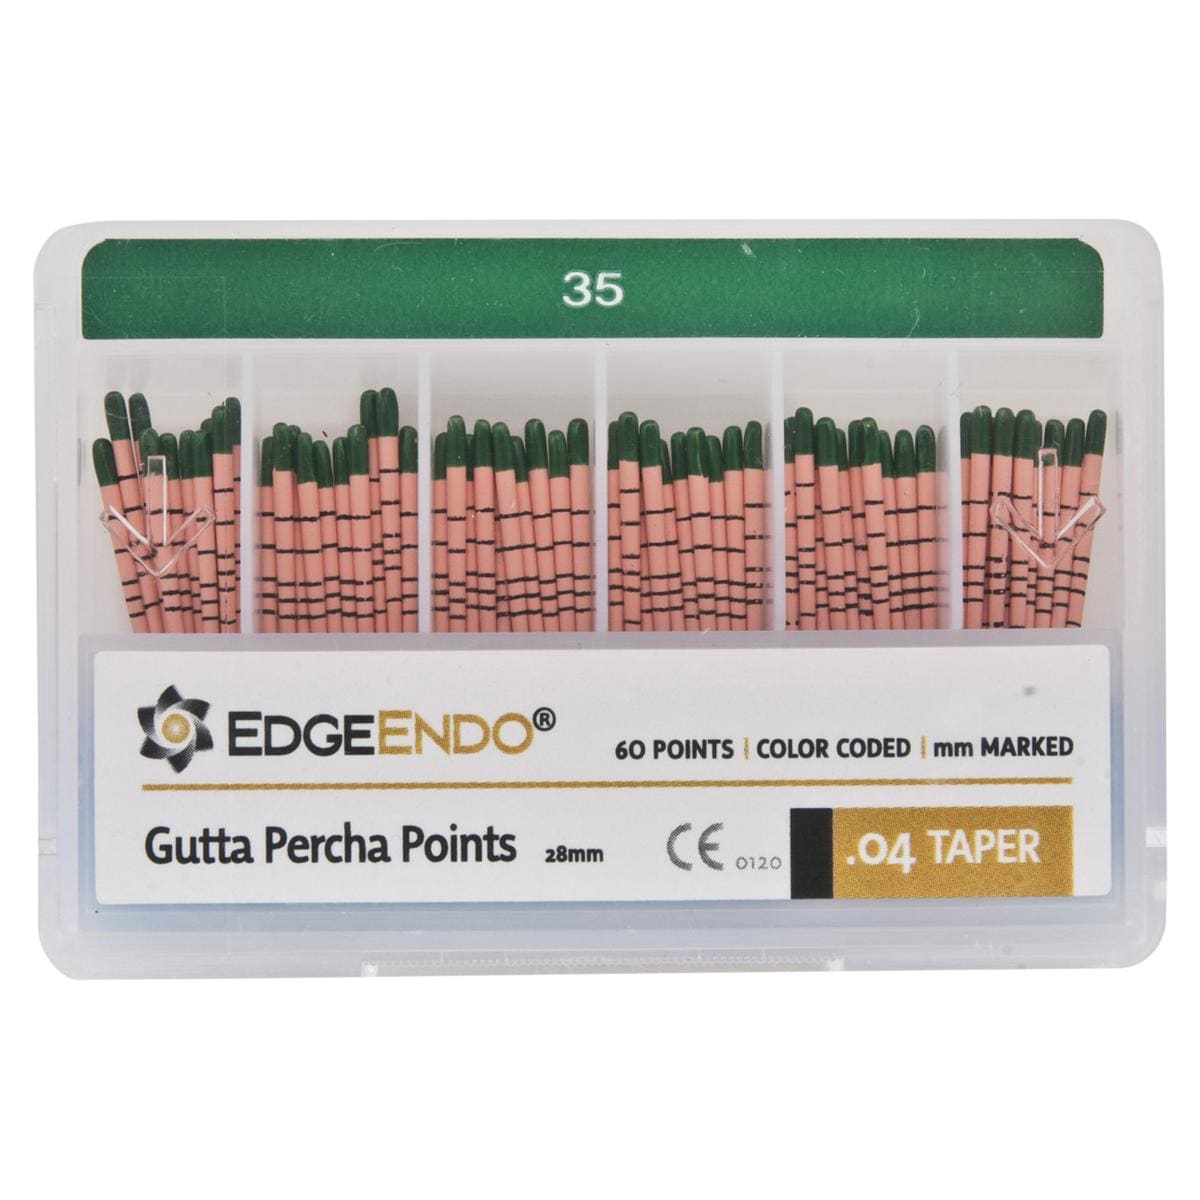 EdgeFile X7 Guttapercha points - Taper 04, ISO 35 (groen) 60 stuks